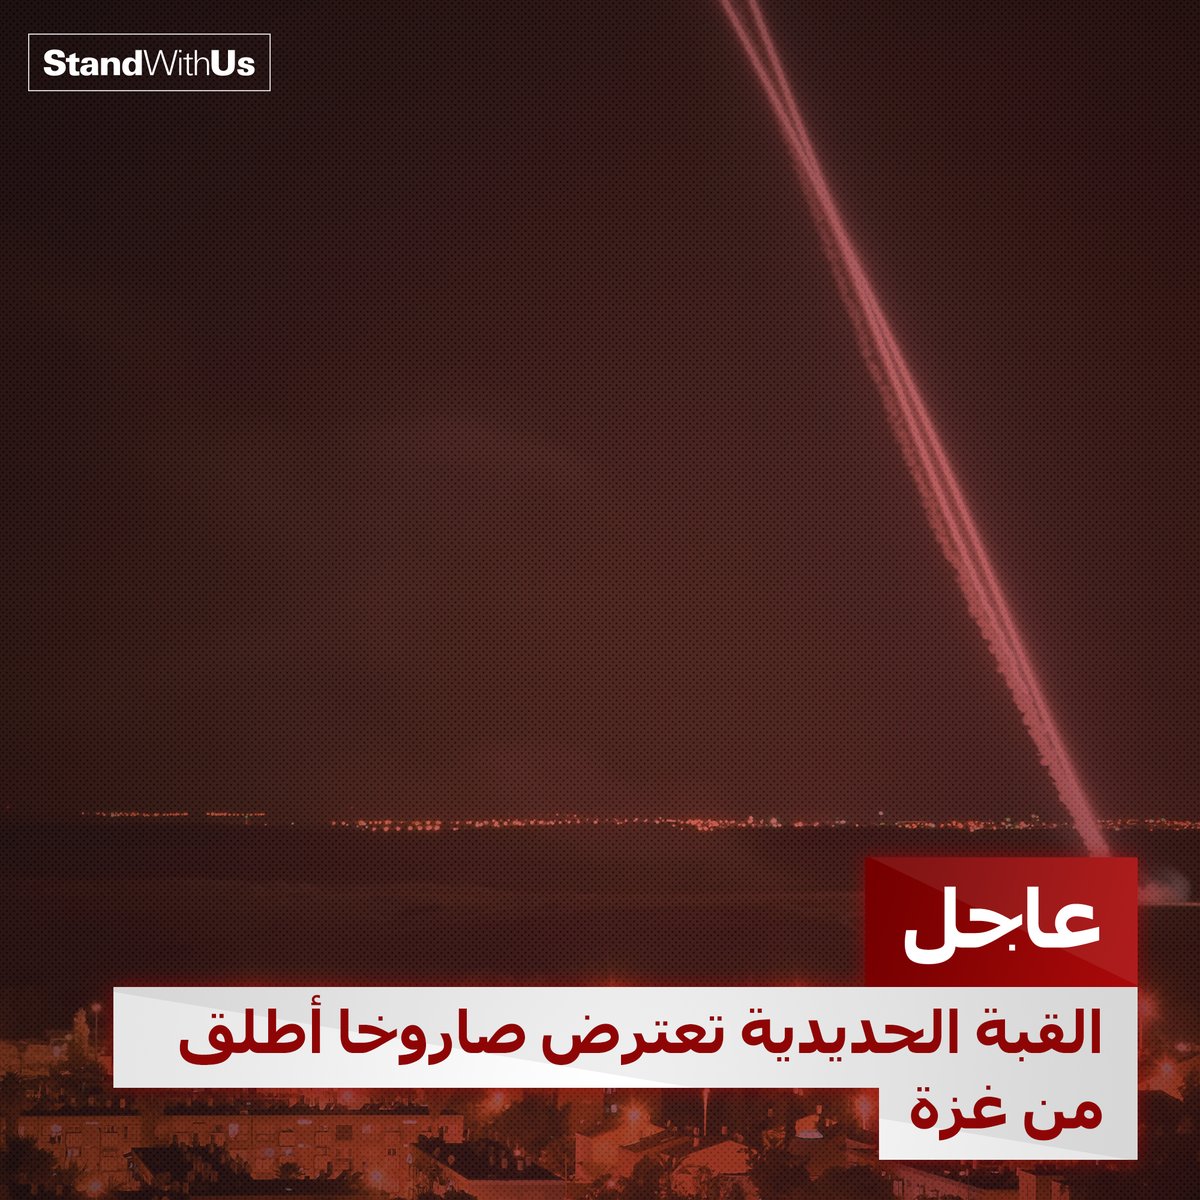 قبل قليل تم إطلاق صاروخ من قطاع غزة باتجاه جنوب إسرائيل تصدت له منظومة القبة الحديدية. …